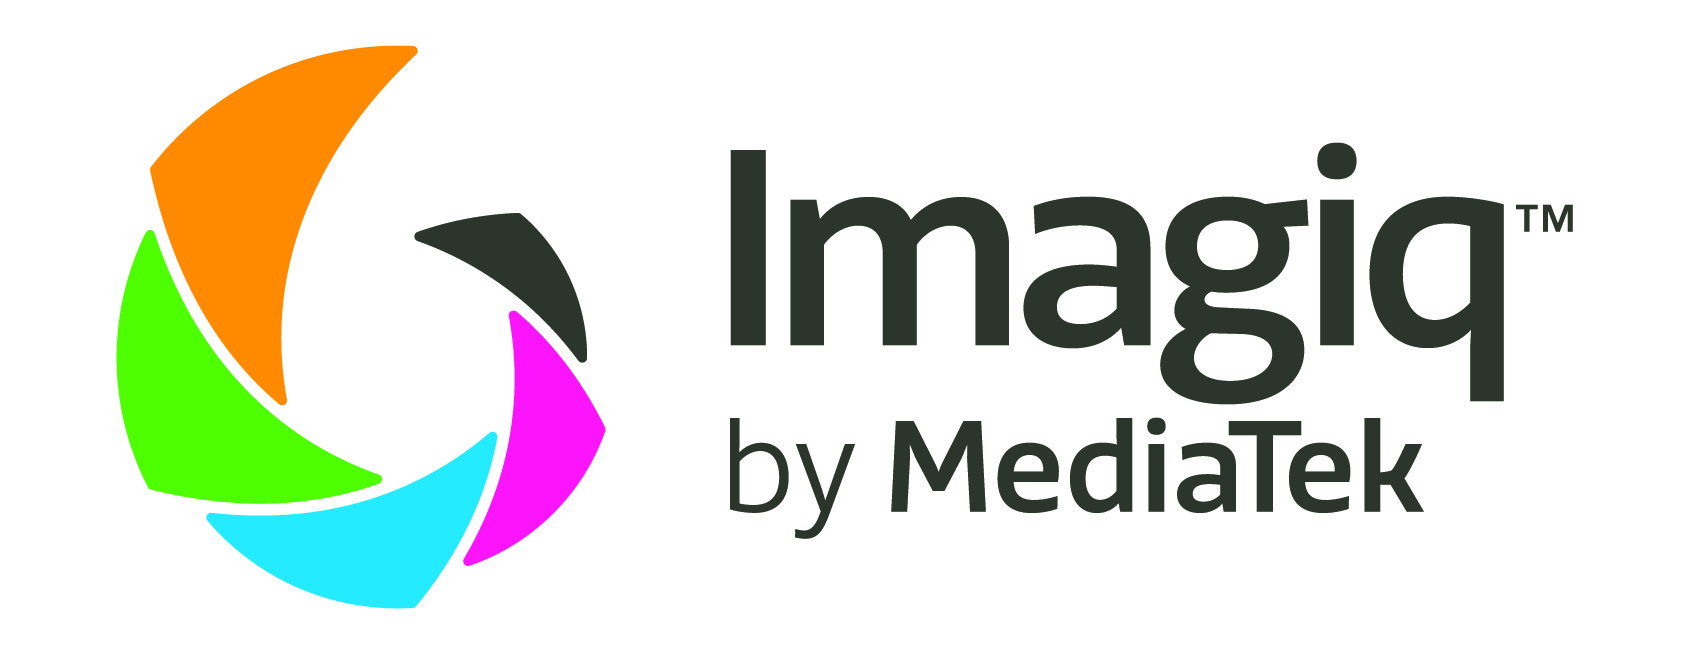 Imagiq de MediaTek es capaz de mejorar todas tus fotografías gracias a su tecnología.- Blog Hola Telcel